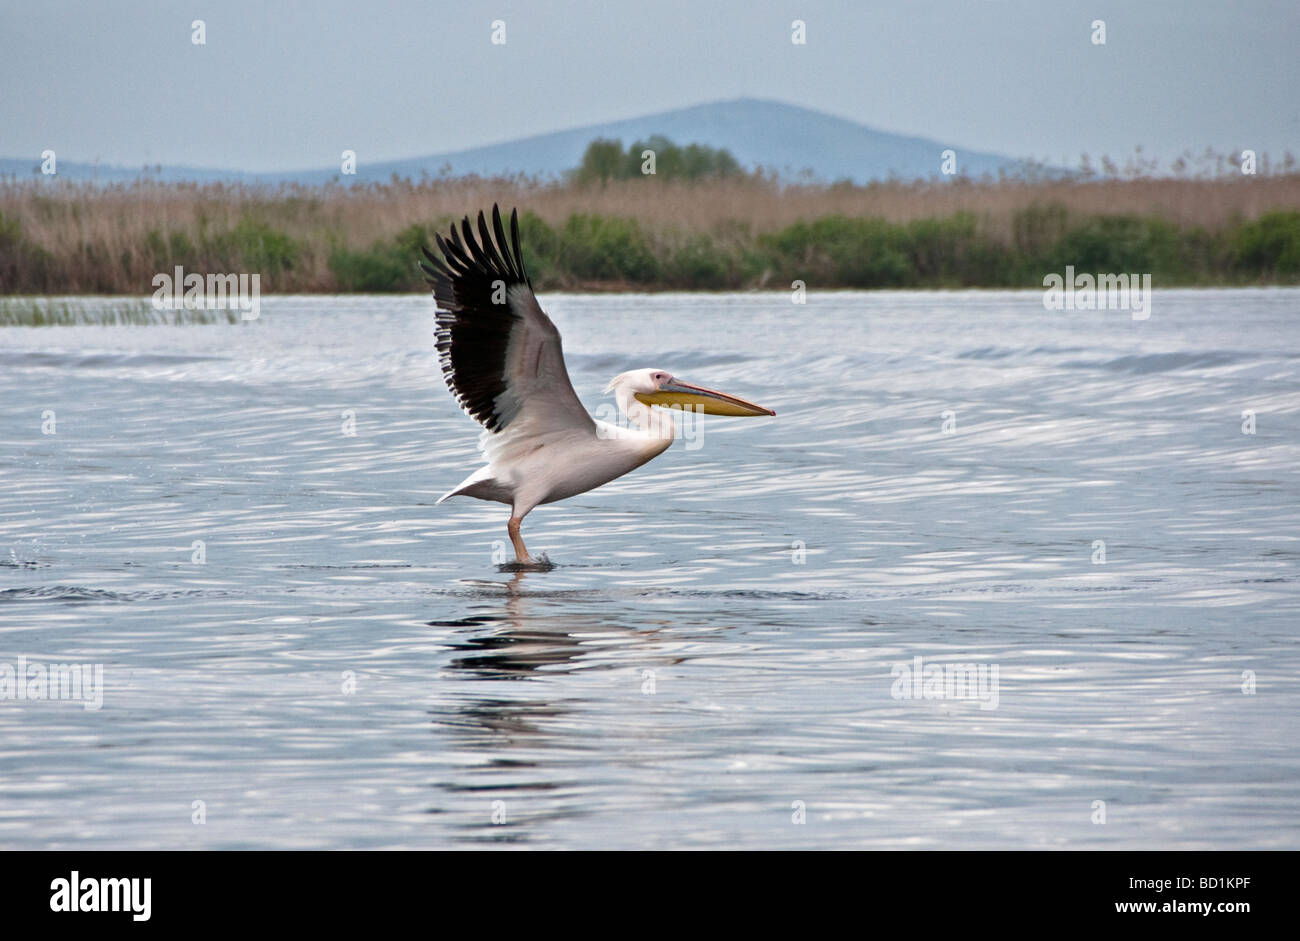 Great White Pelican taking flight in Romania's Danube Delta Stock Photo